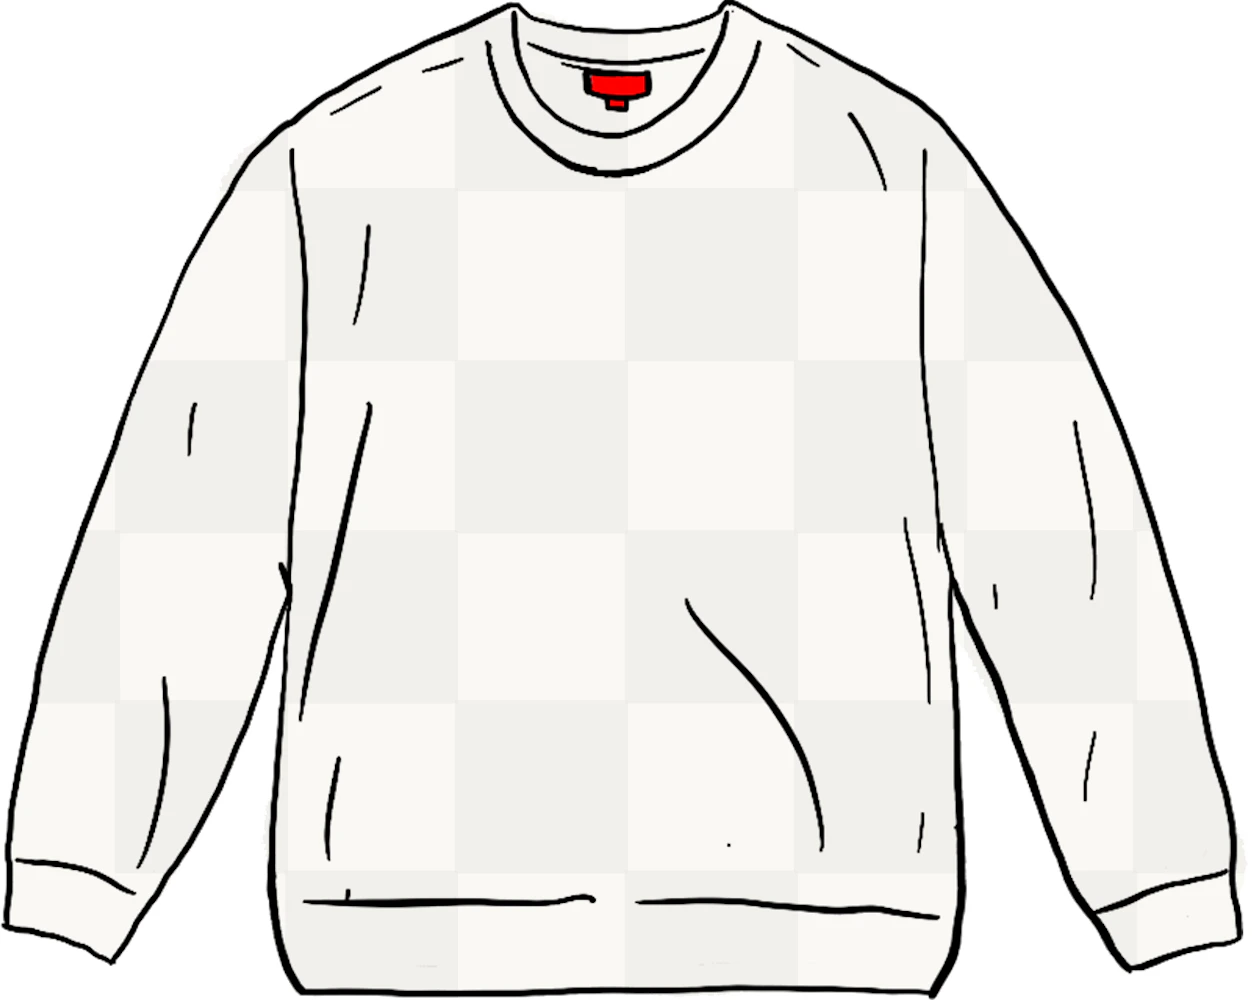 新品★Tonal Checkerboard Small Box Sweater